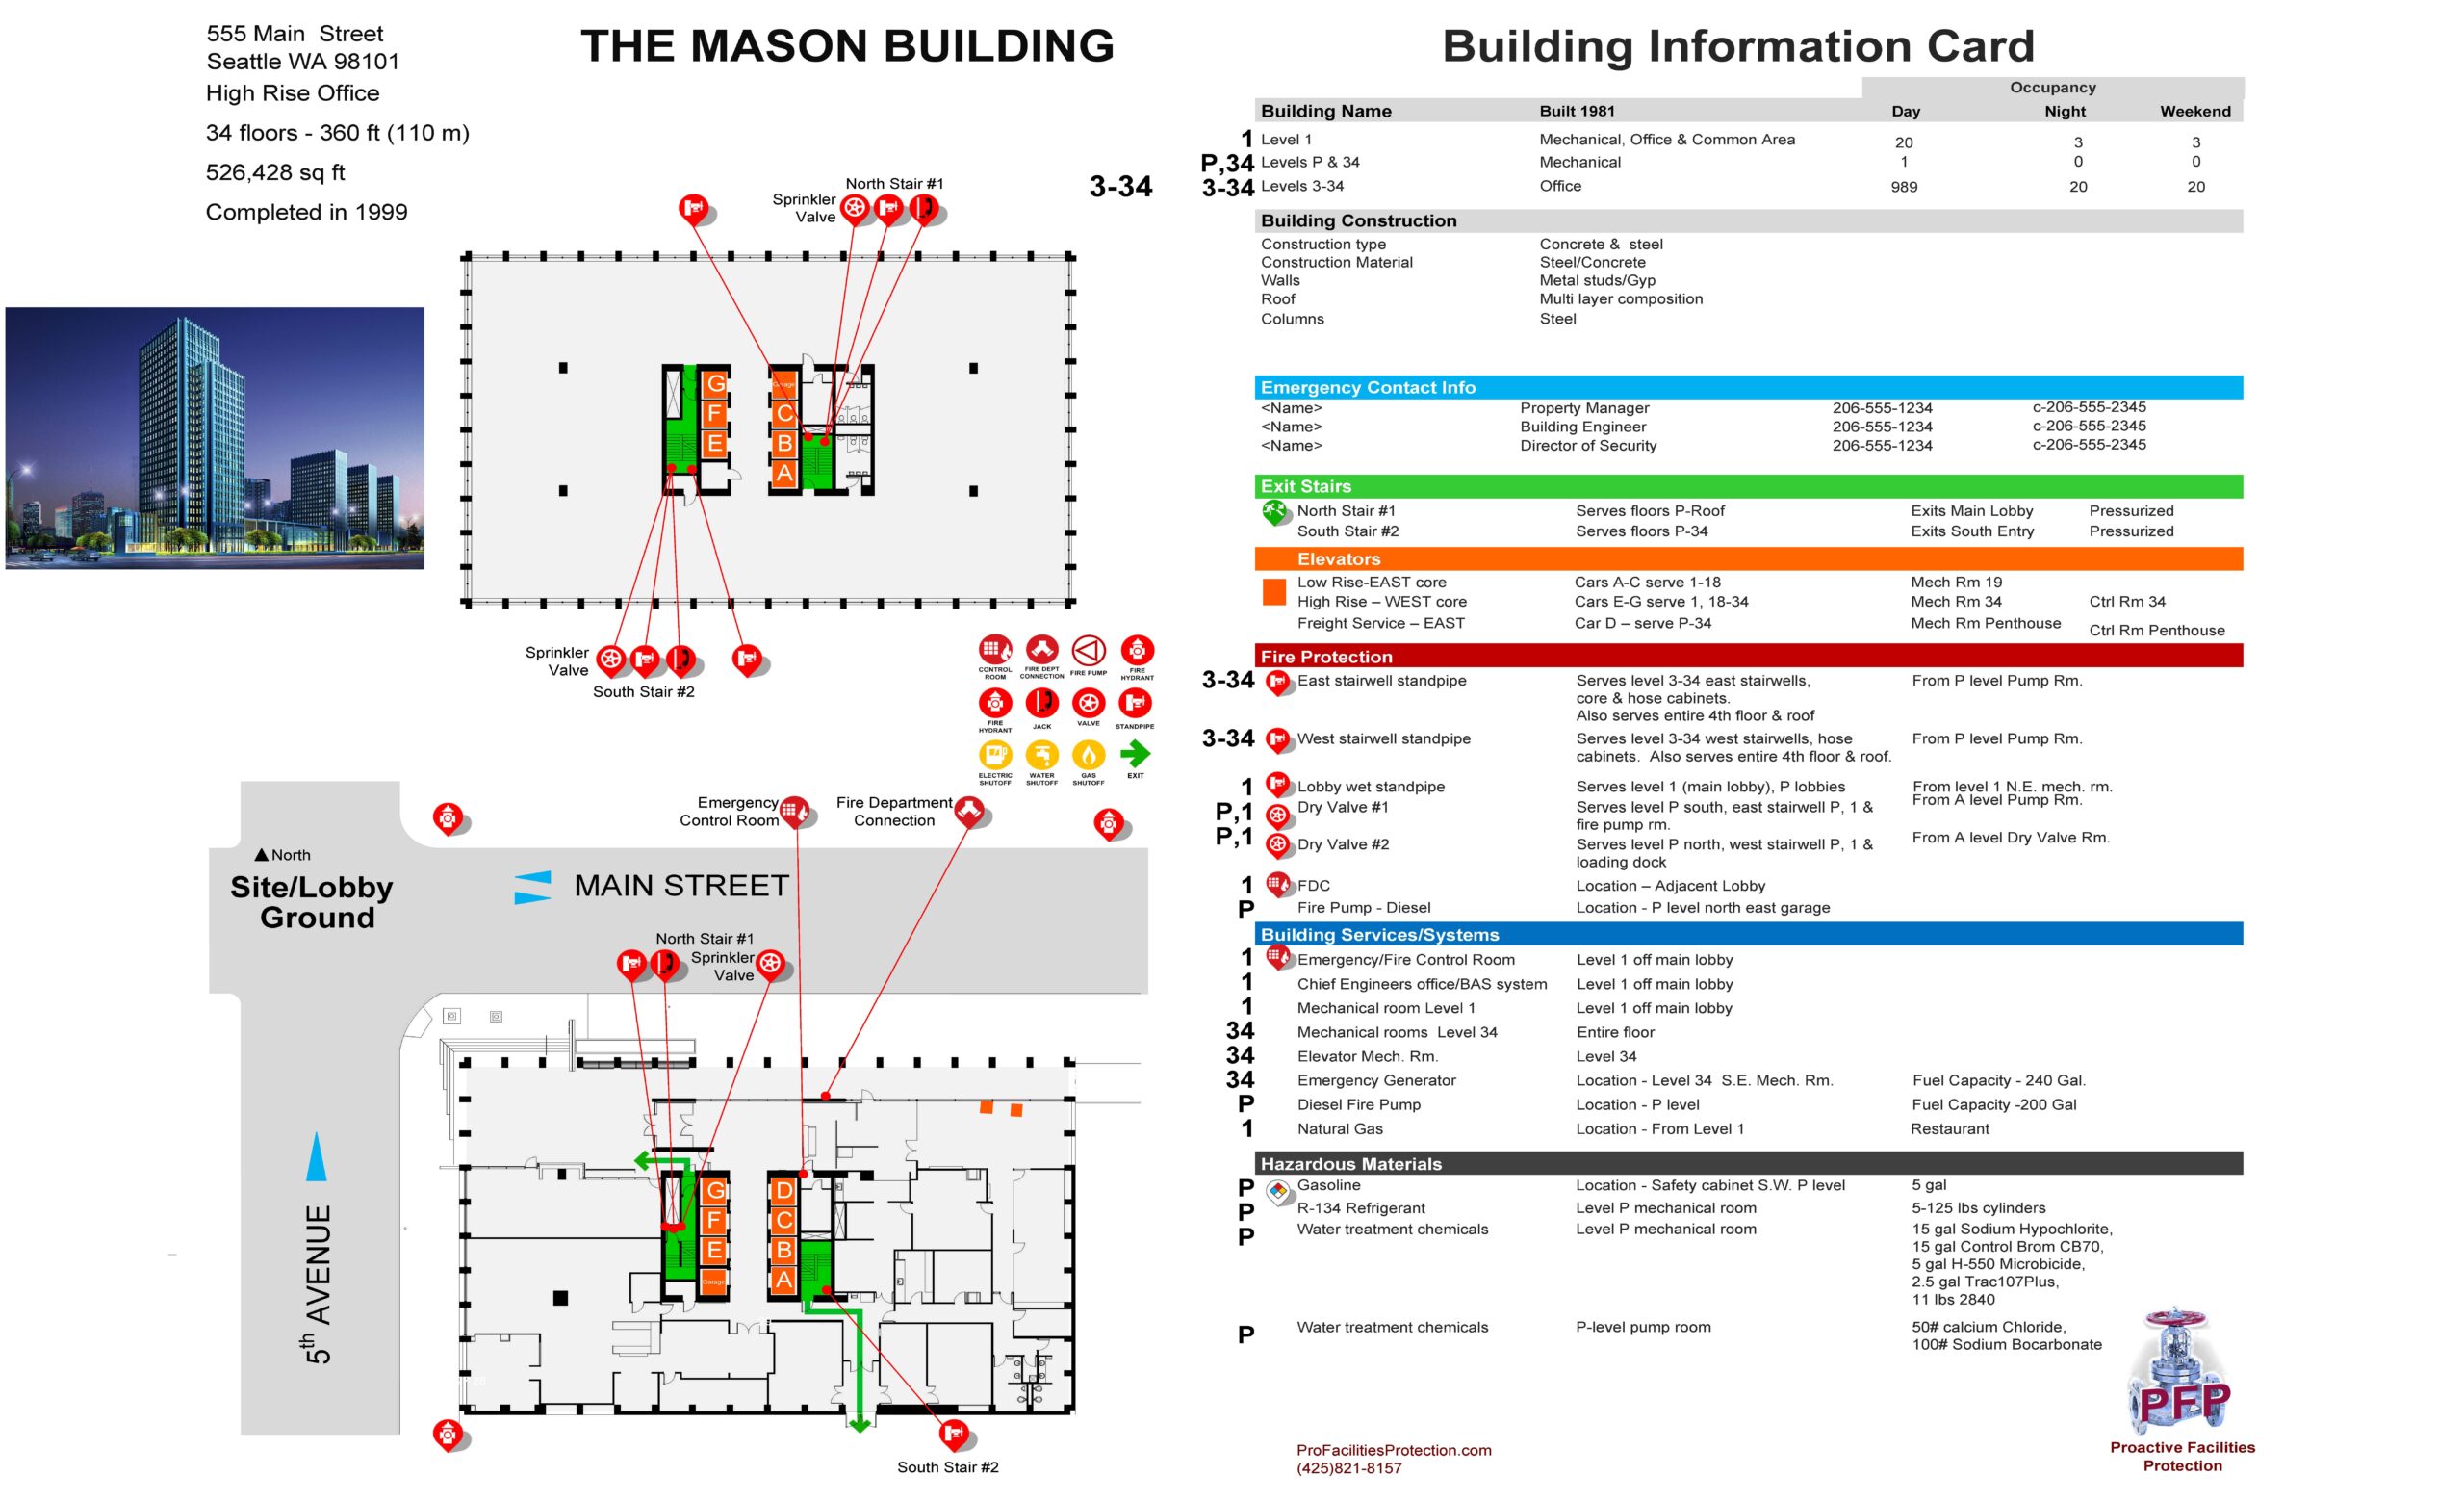 Building Information Card-Sample 24x36 V.2 2-24-18